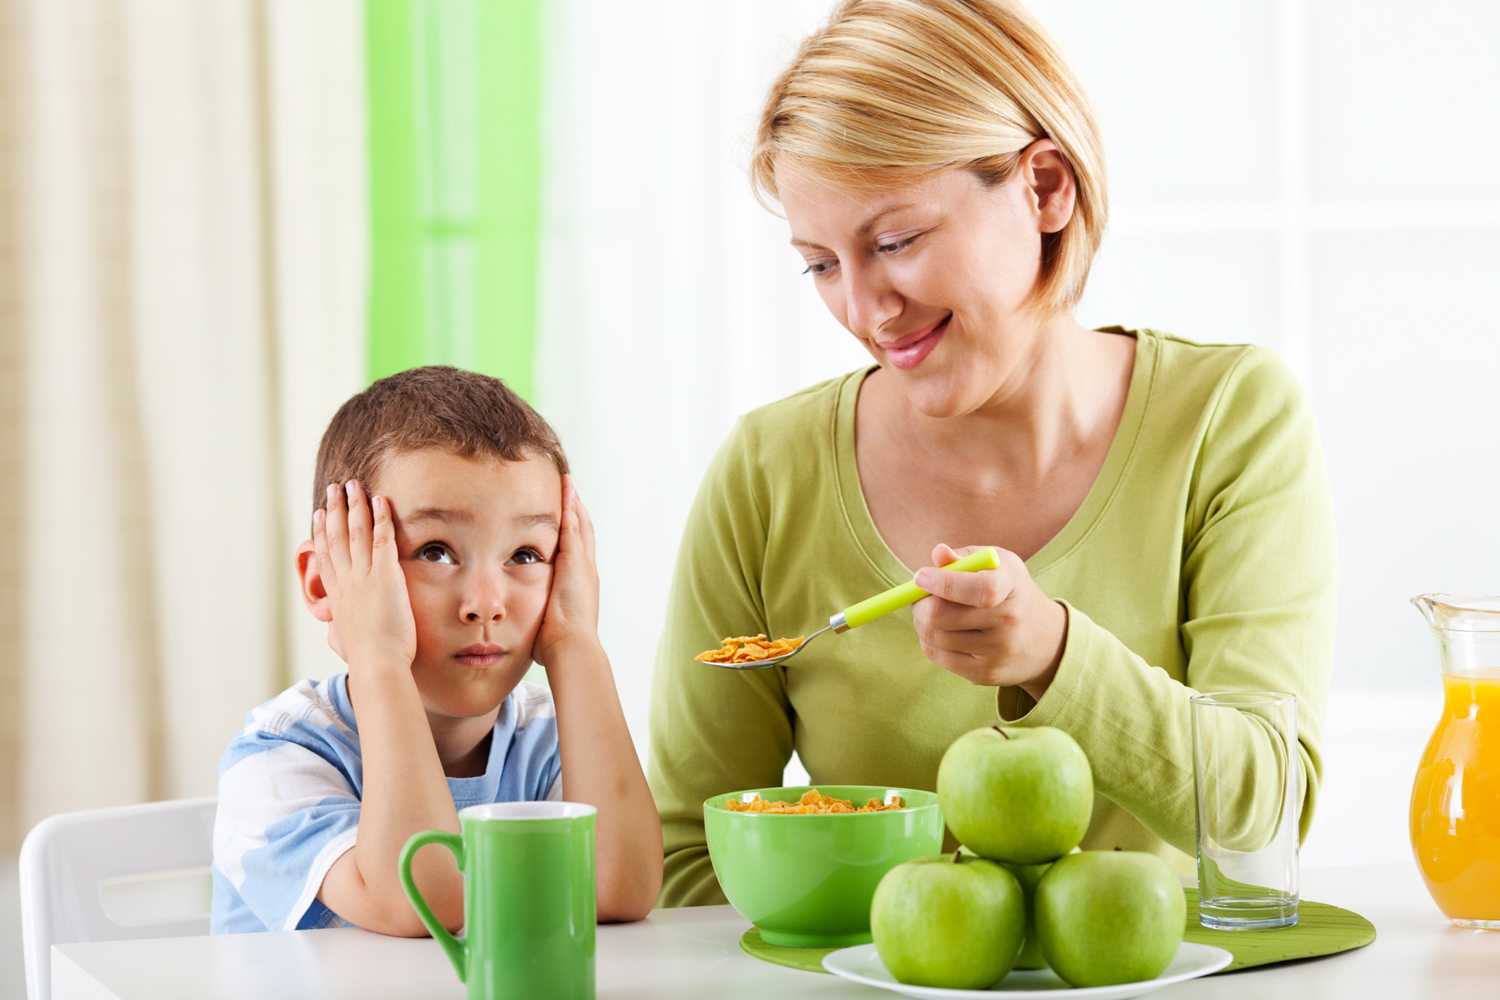 Плохой или избирательный аппетит у ребёнка.советы как повысить